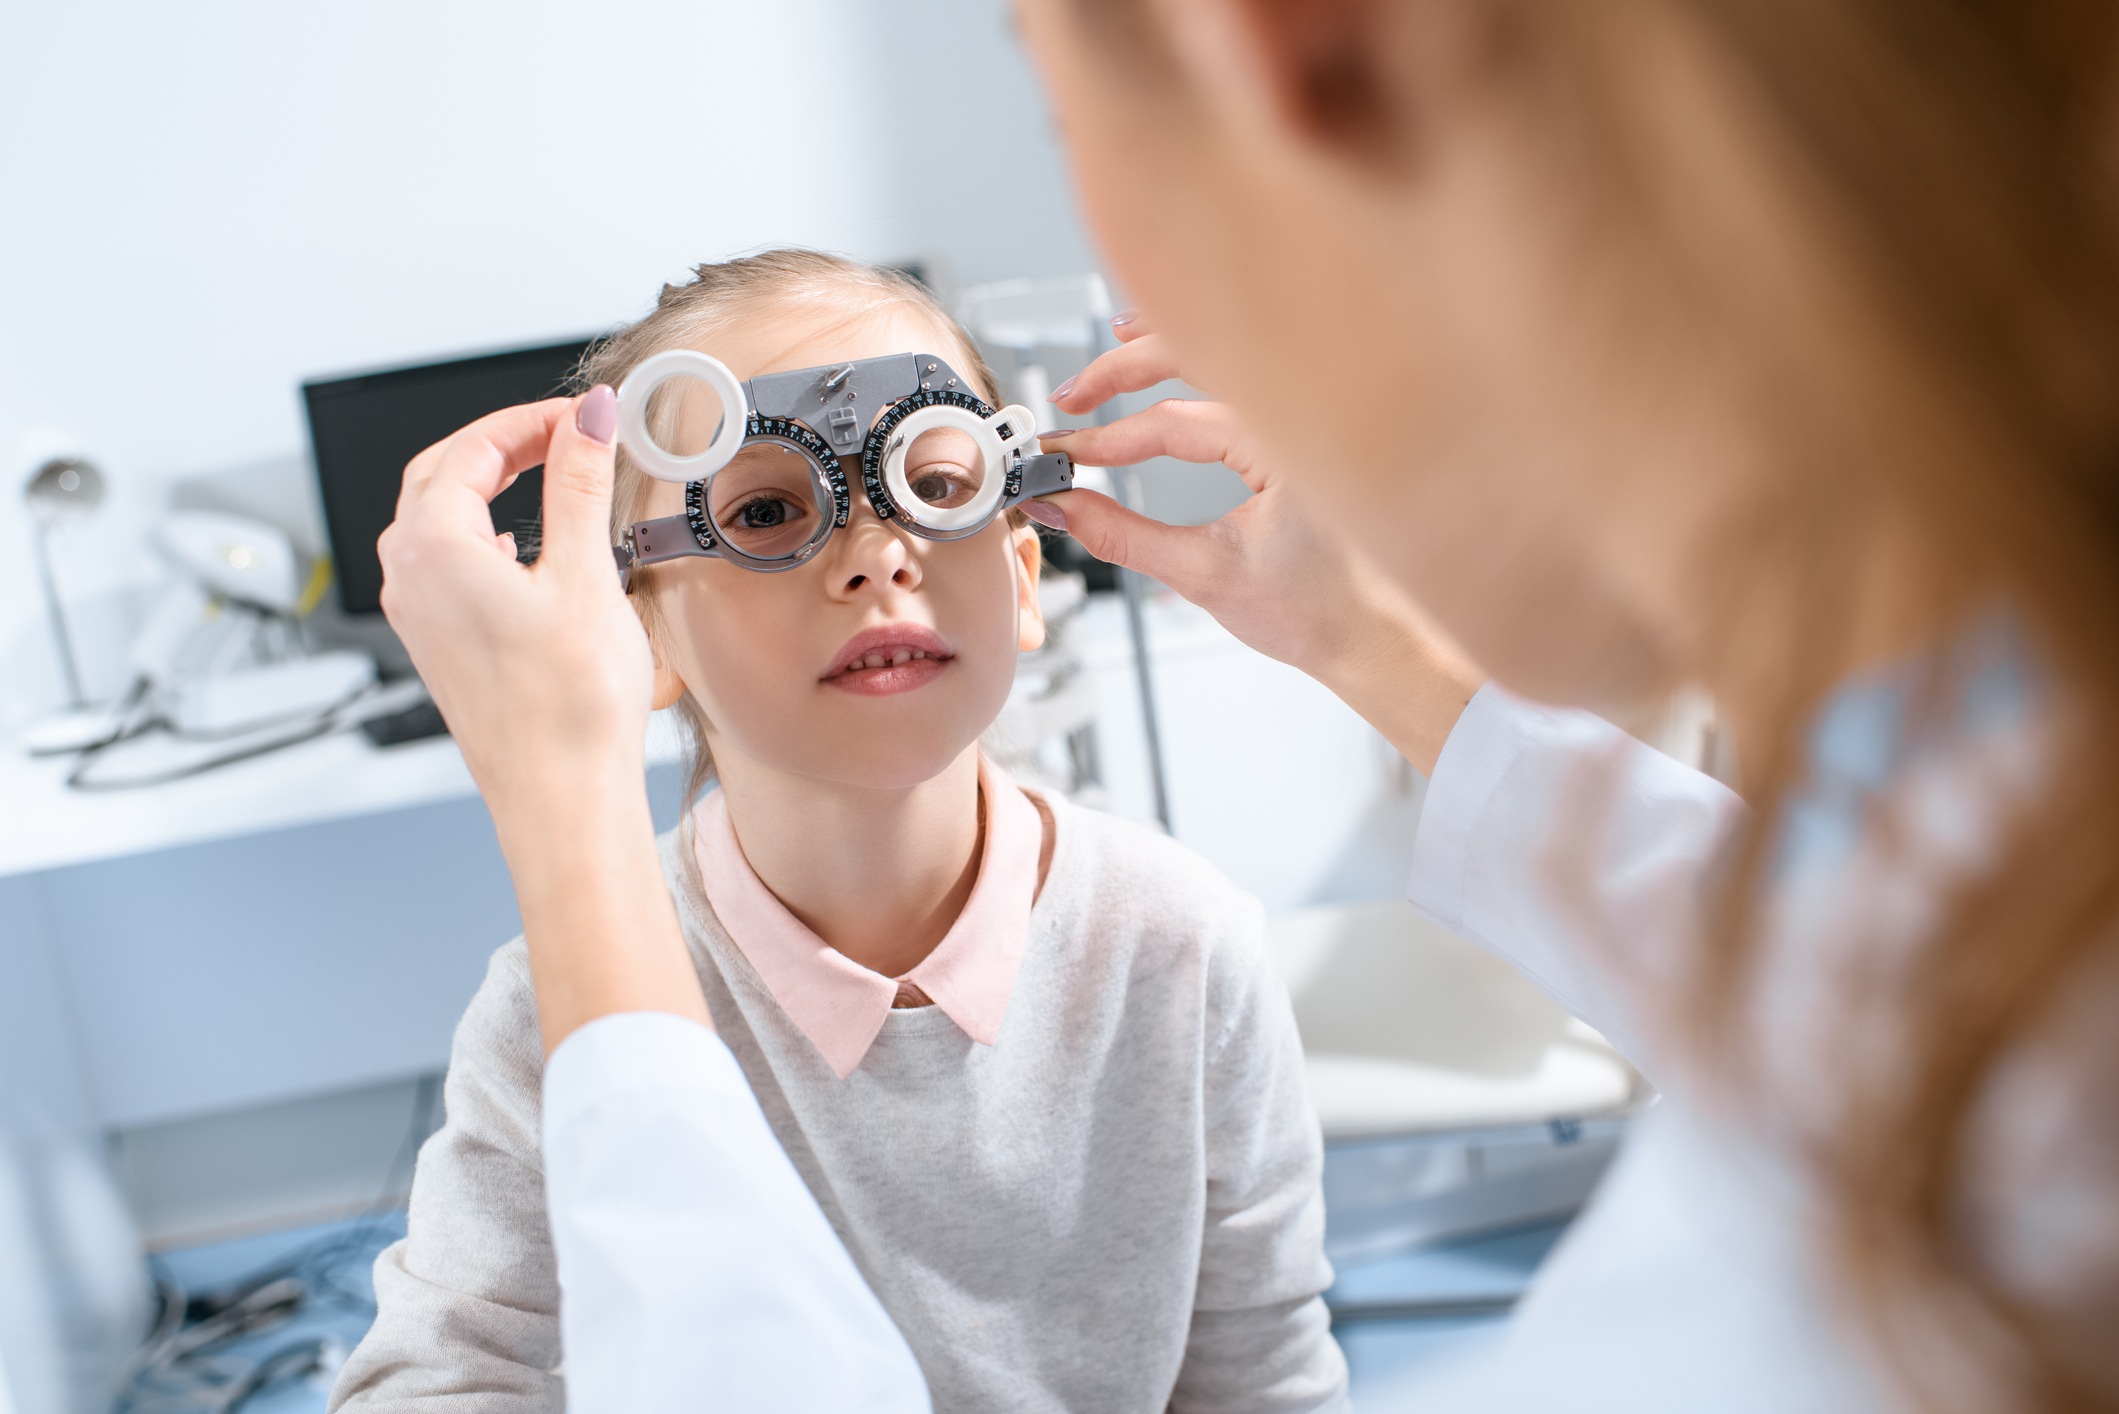 Detská oftalmológia a meranie zrakovej ostrosti - vízus